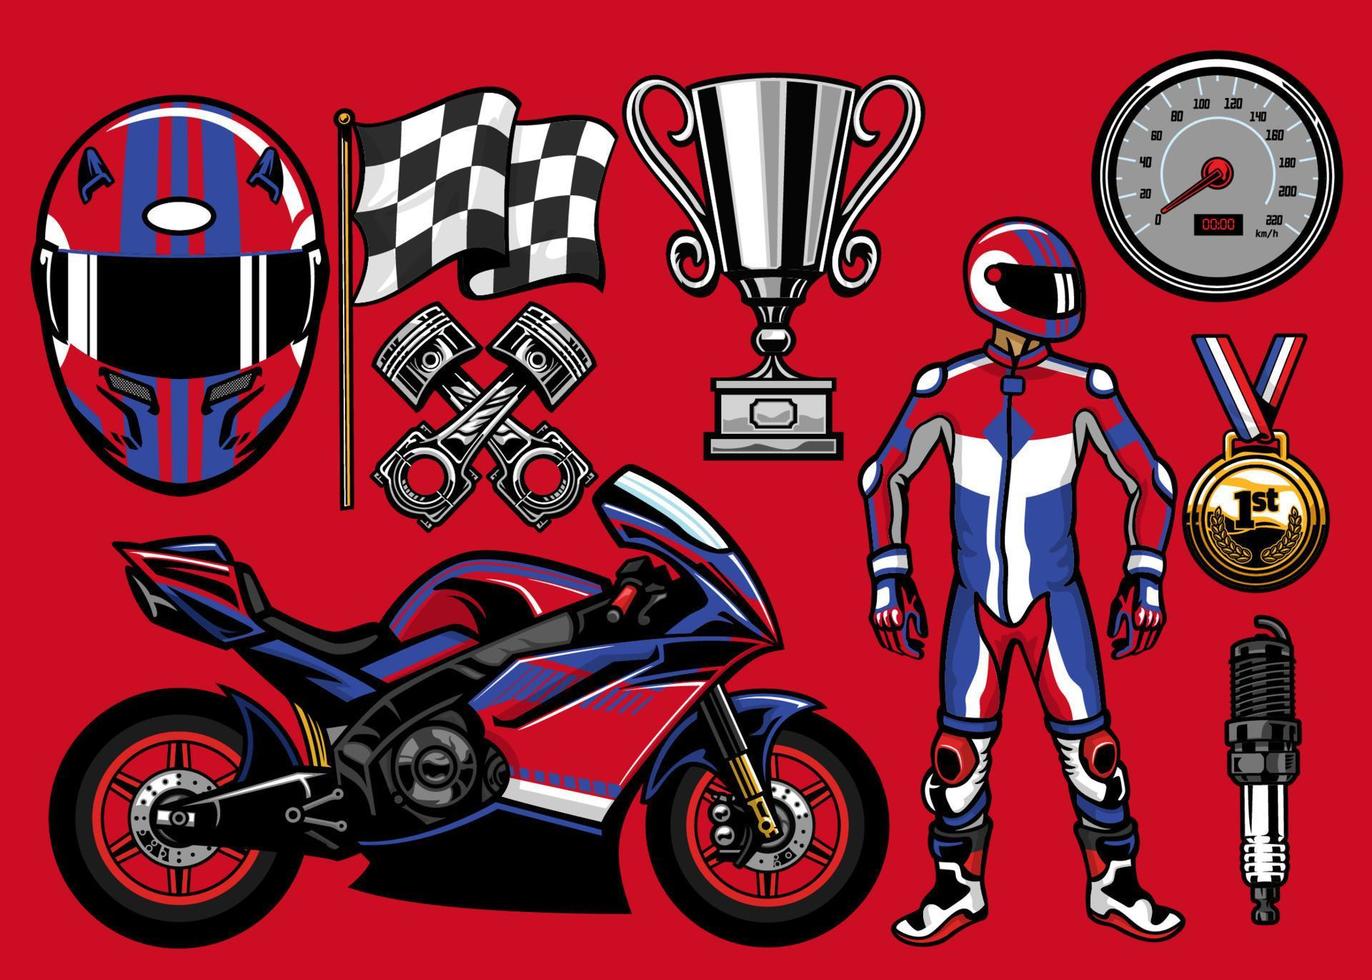 Set of sportbike racing elements vector